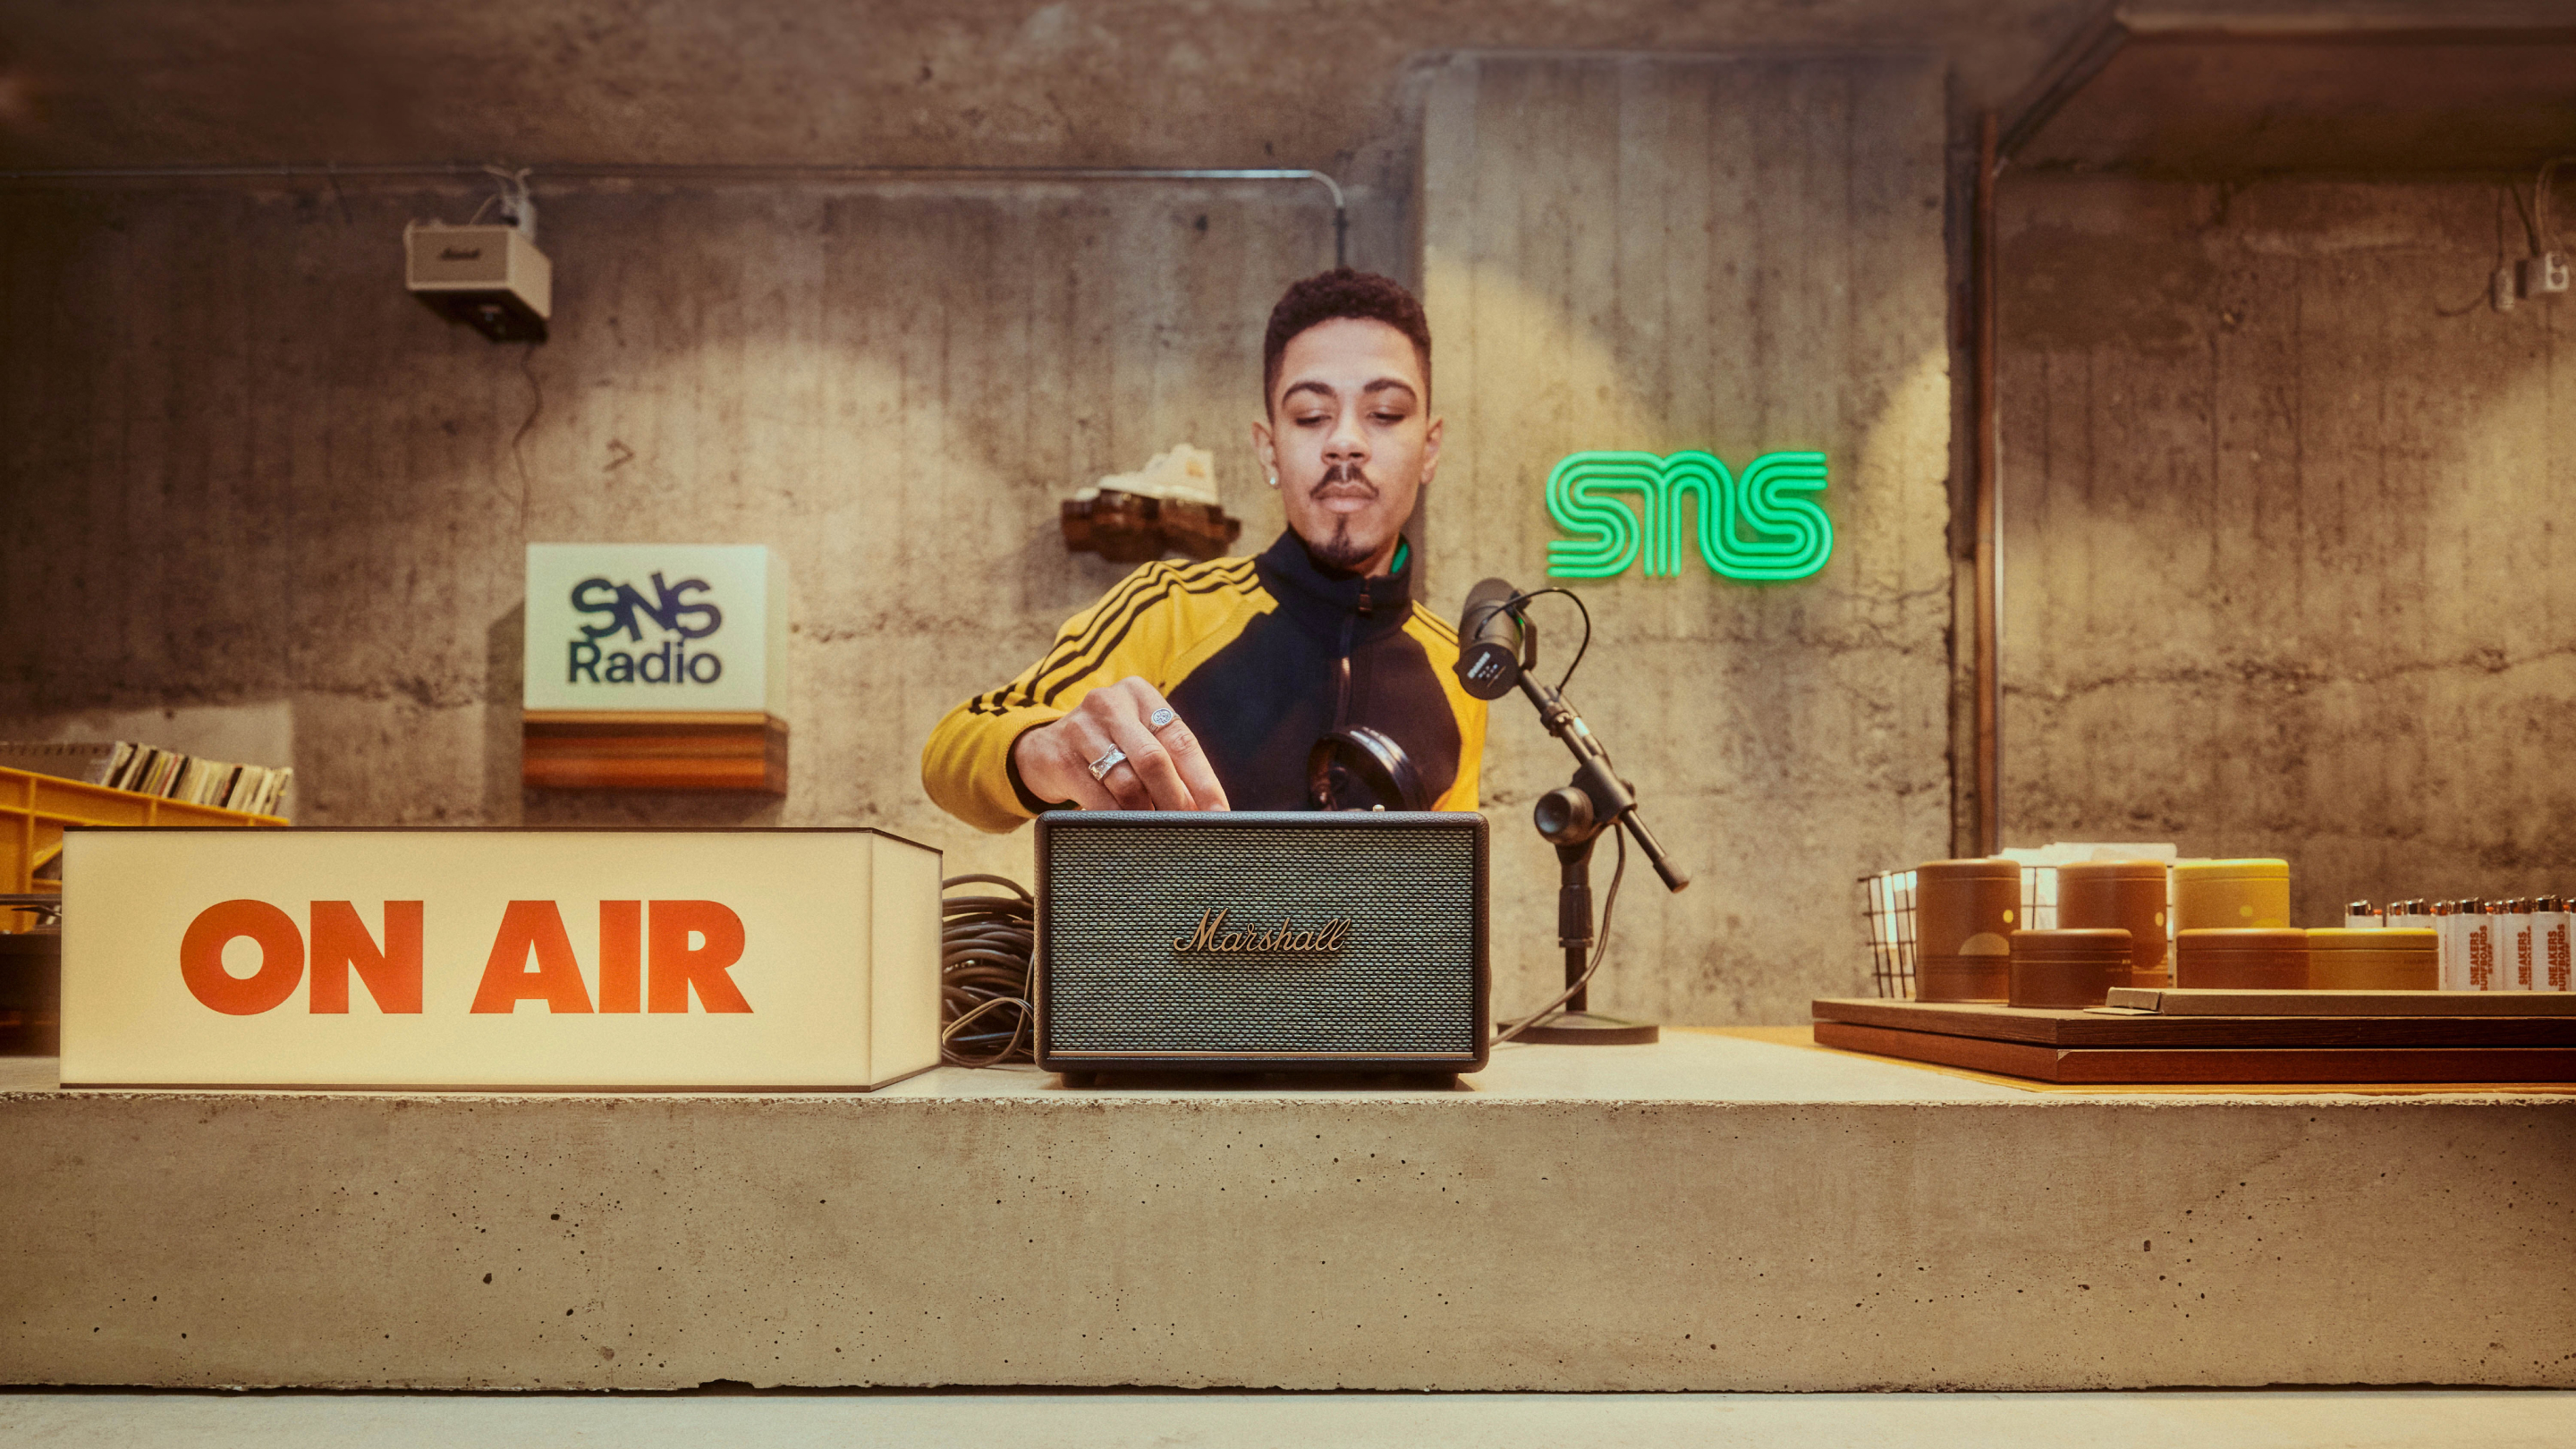 Ein junger Mann stellt die Regler eines Marshall-Lautsprechers in einem Radiosender mit Neonschildern und Vintage-Dekor ein.